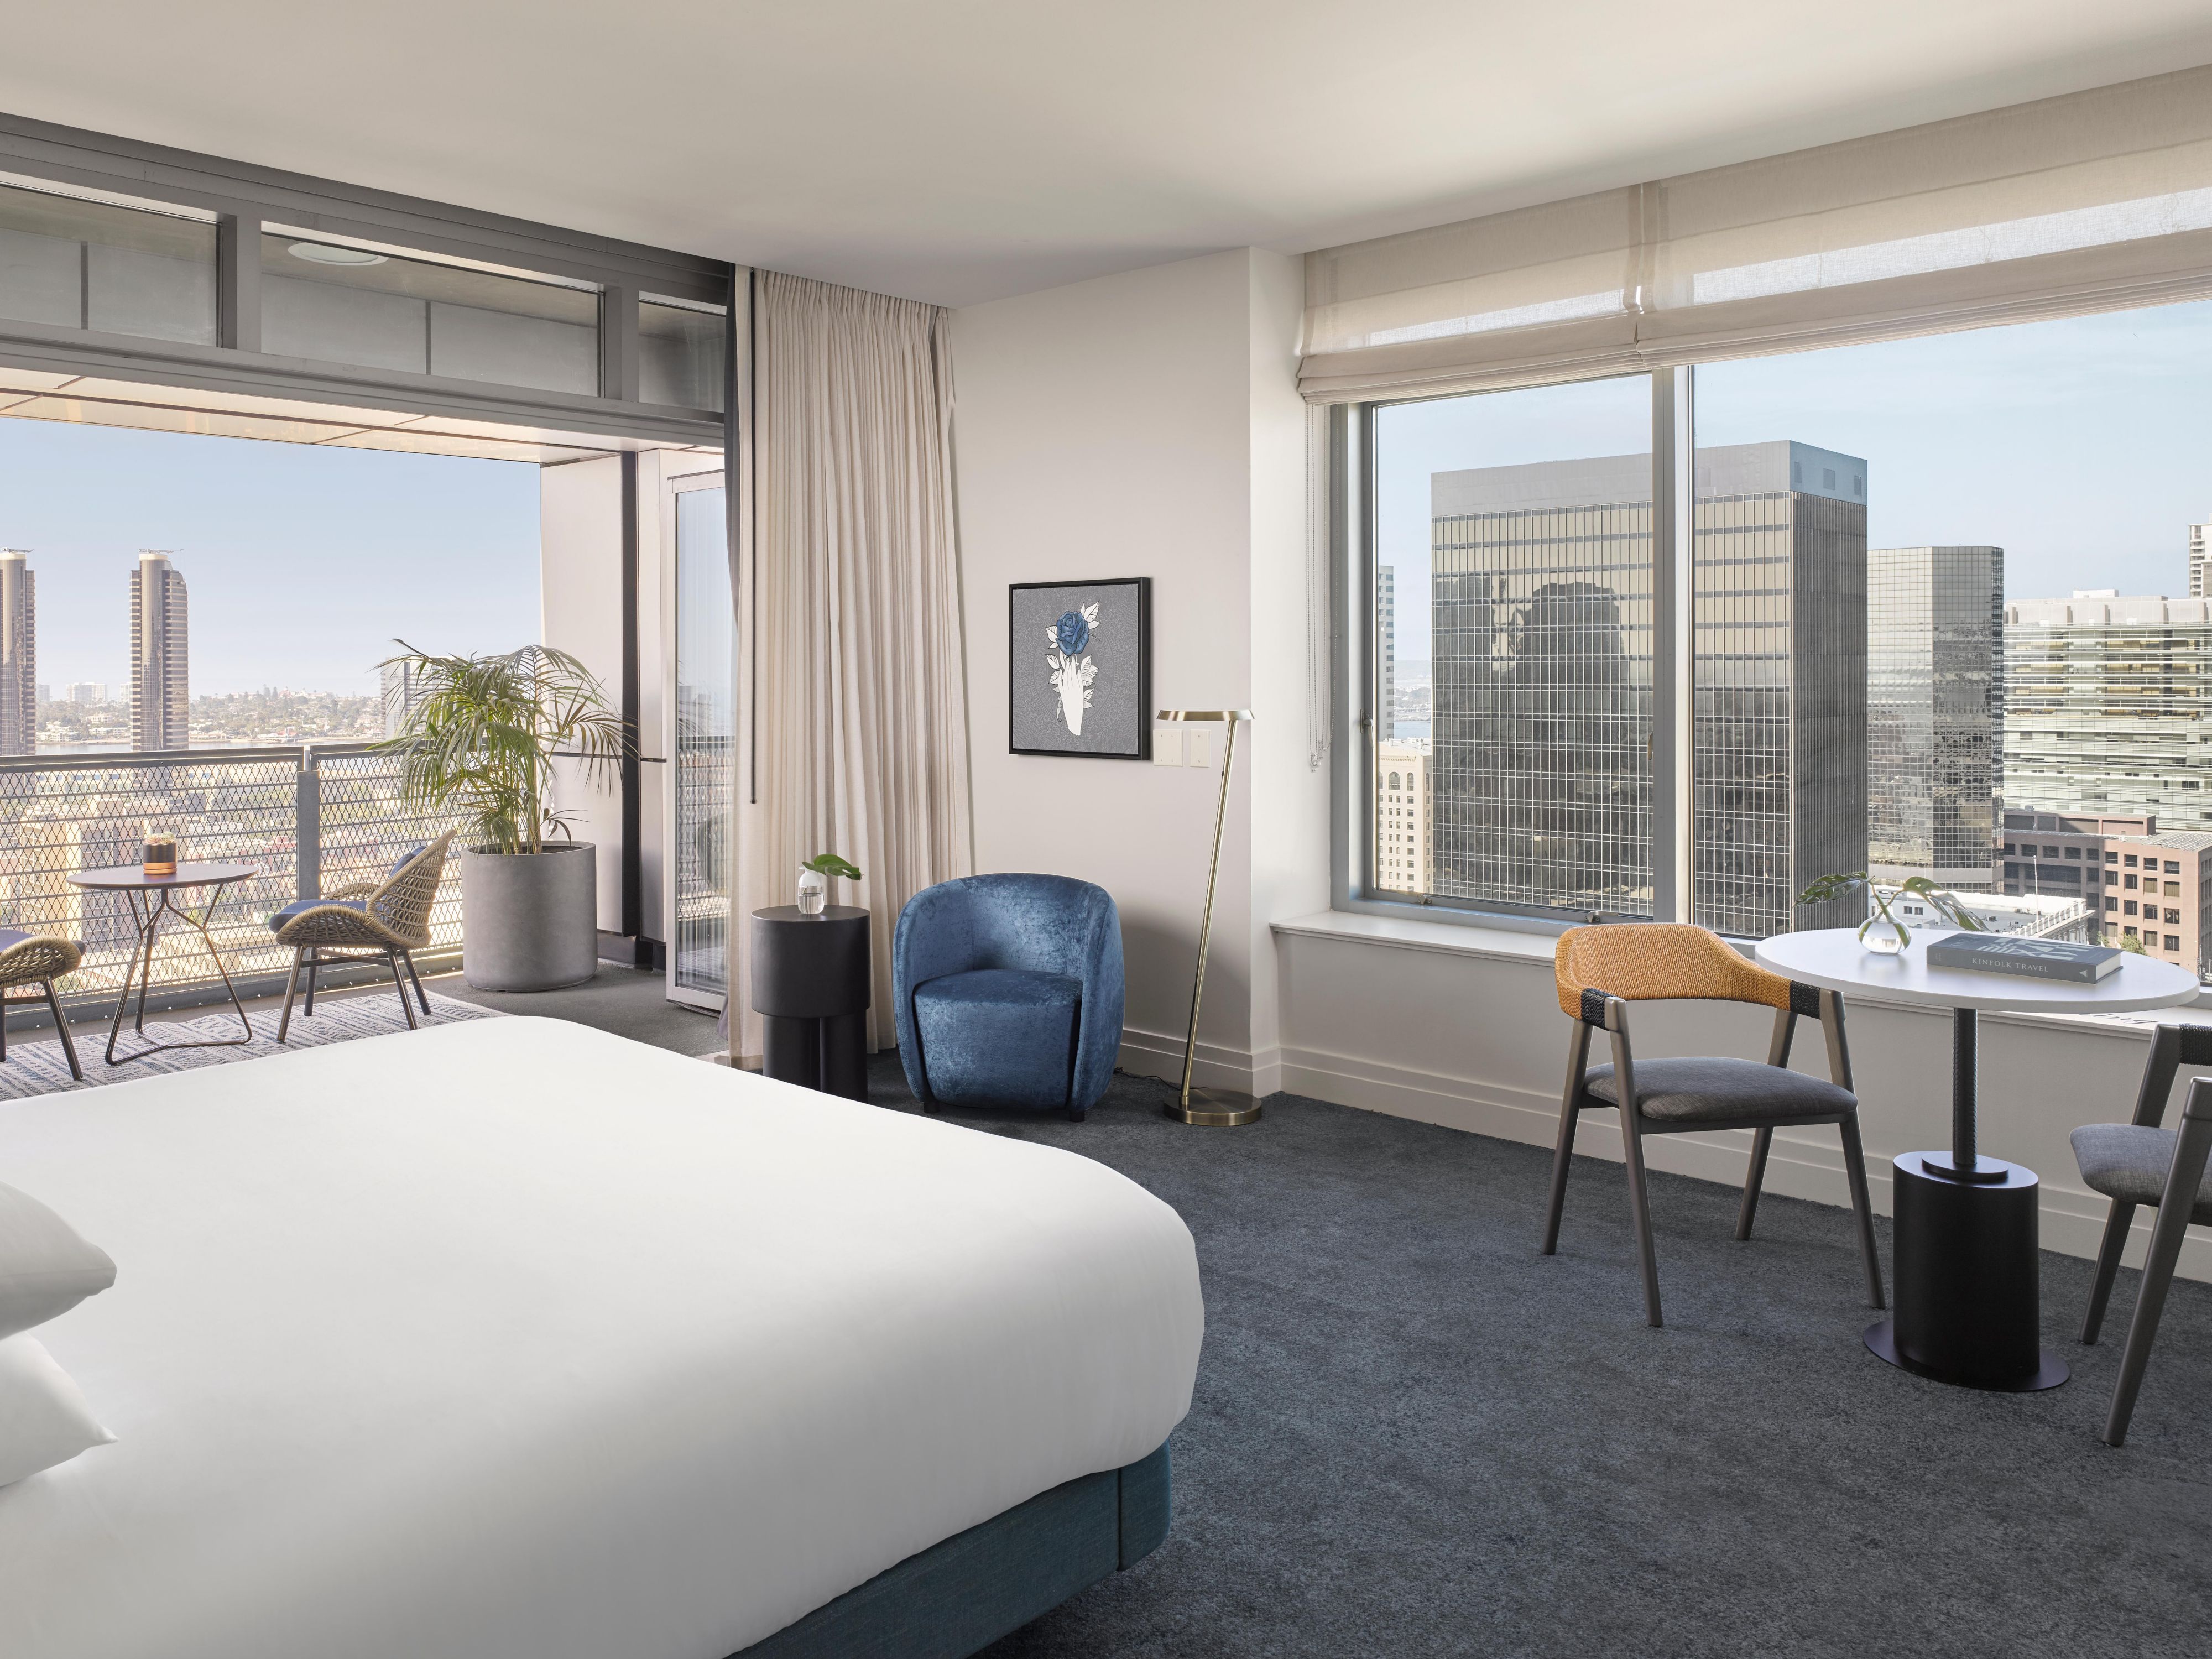 Hilton San Diego Mission Valley em San Diego, Estados Unidos da América —  reserve Hotel, Preços de 2023